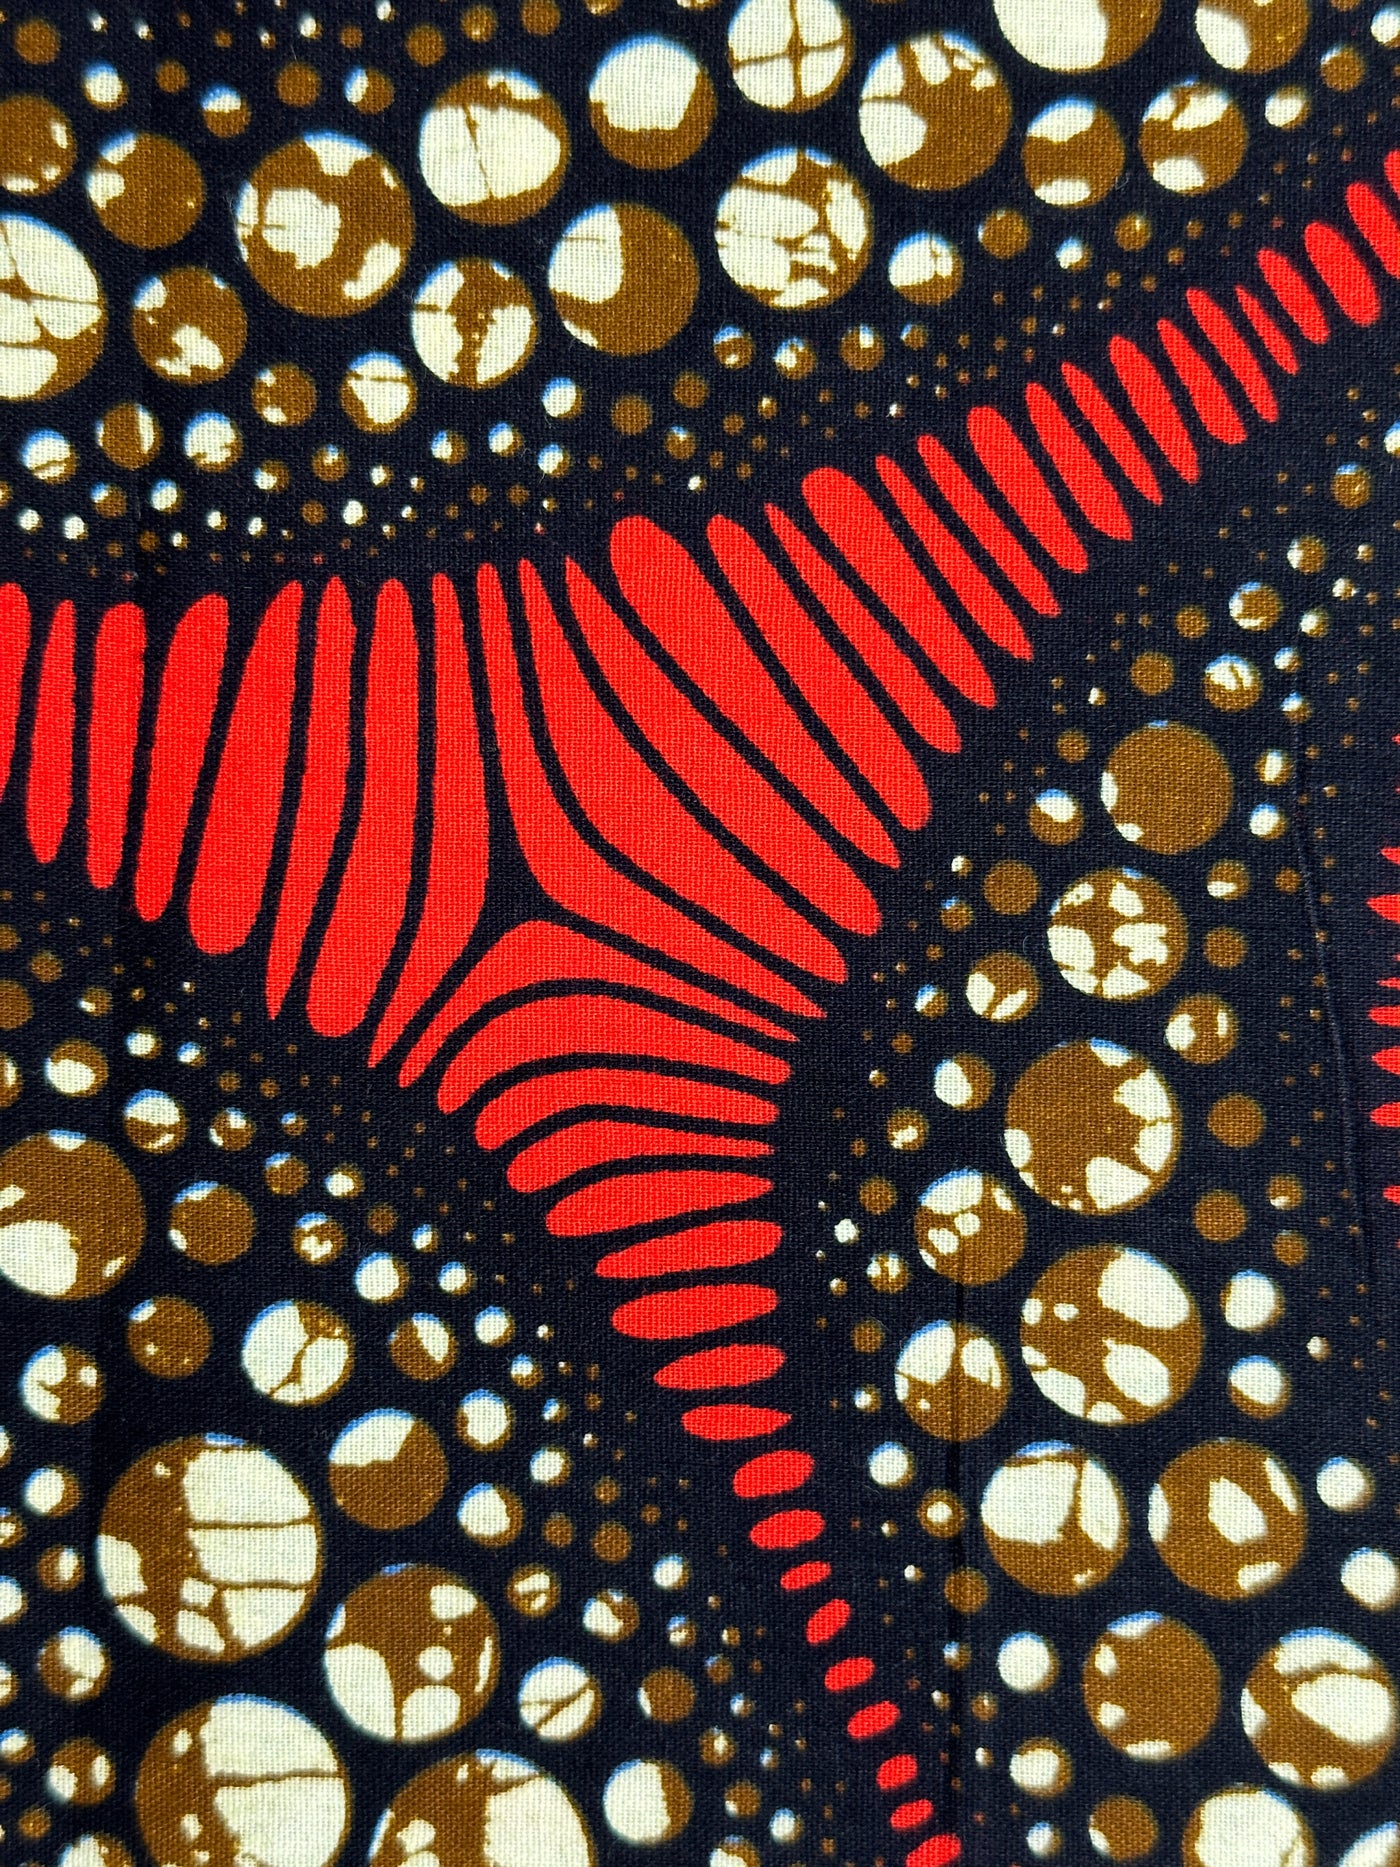 Ankara Fabric - 14201101O